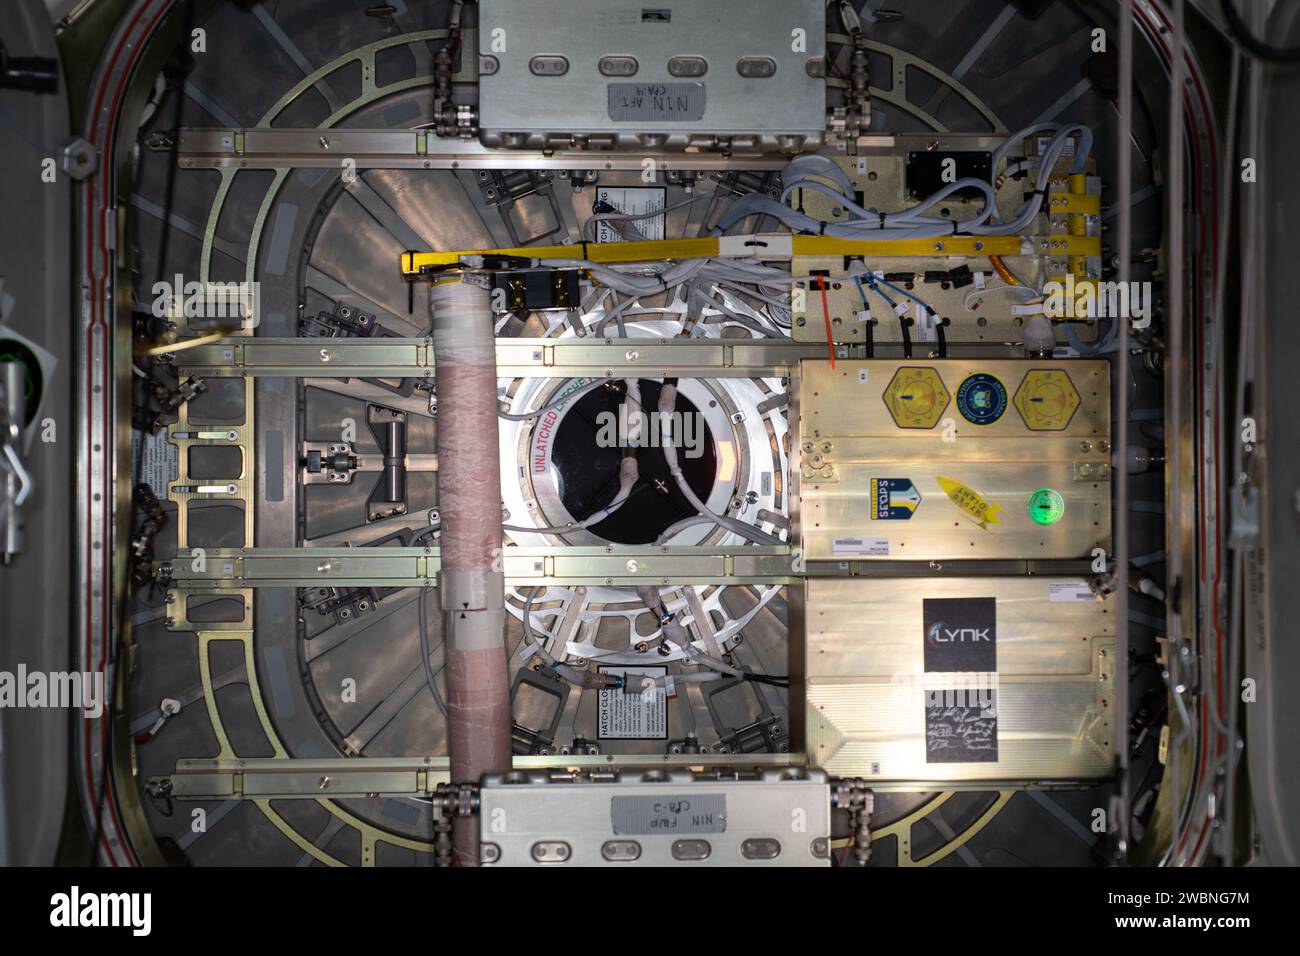 Iss063e010534 (5/10/2020) --- Una vista dal modulo Unity a bordo della stazione spaziale Internazionale (ISS) del portello Northrop Grumman NG-13. Attaccato al portello c'è il piccolo schieramento satellitare con fionda caricato con due CubeSat che saranno dispiegati in orbita terrestre dopo che Cygnus lascerà il laboratorio orbitante l'11 maggio 2020. L'indagine SEOPS-UbiquitiLink dimostra la premessa che piccoli satelliti/nano satelliti possono svolgere missioni di comunicazione vitali e fornire servizi di comunicazione preziosi. L'indagine SEOPS-WIDAR dimostra tecnologie che aumentano l'util Foto Stock